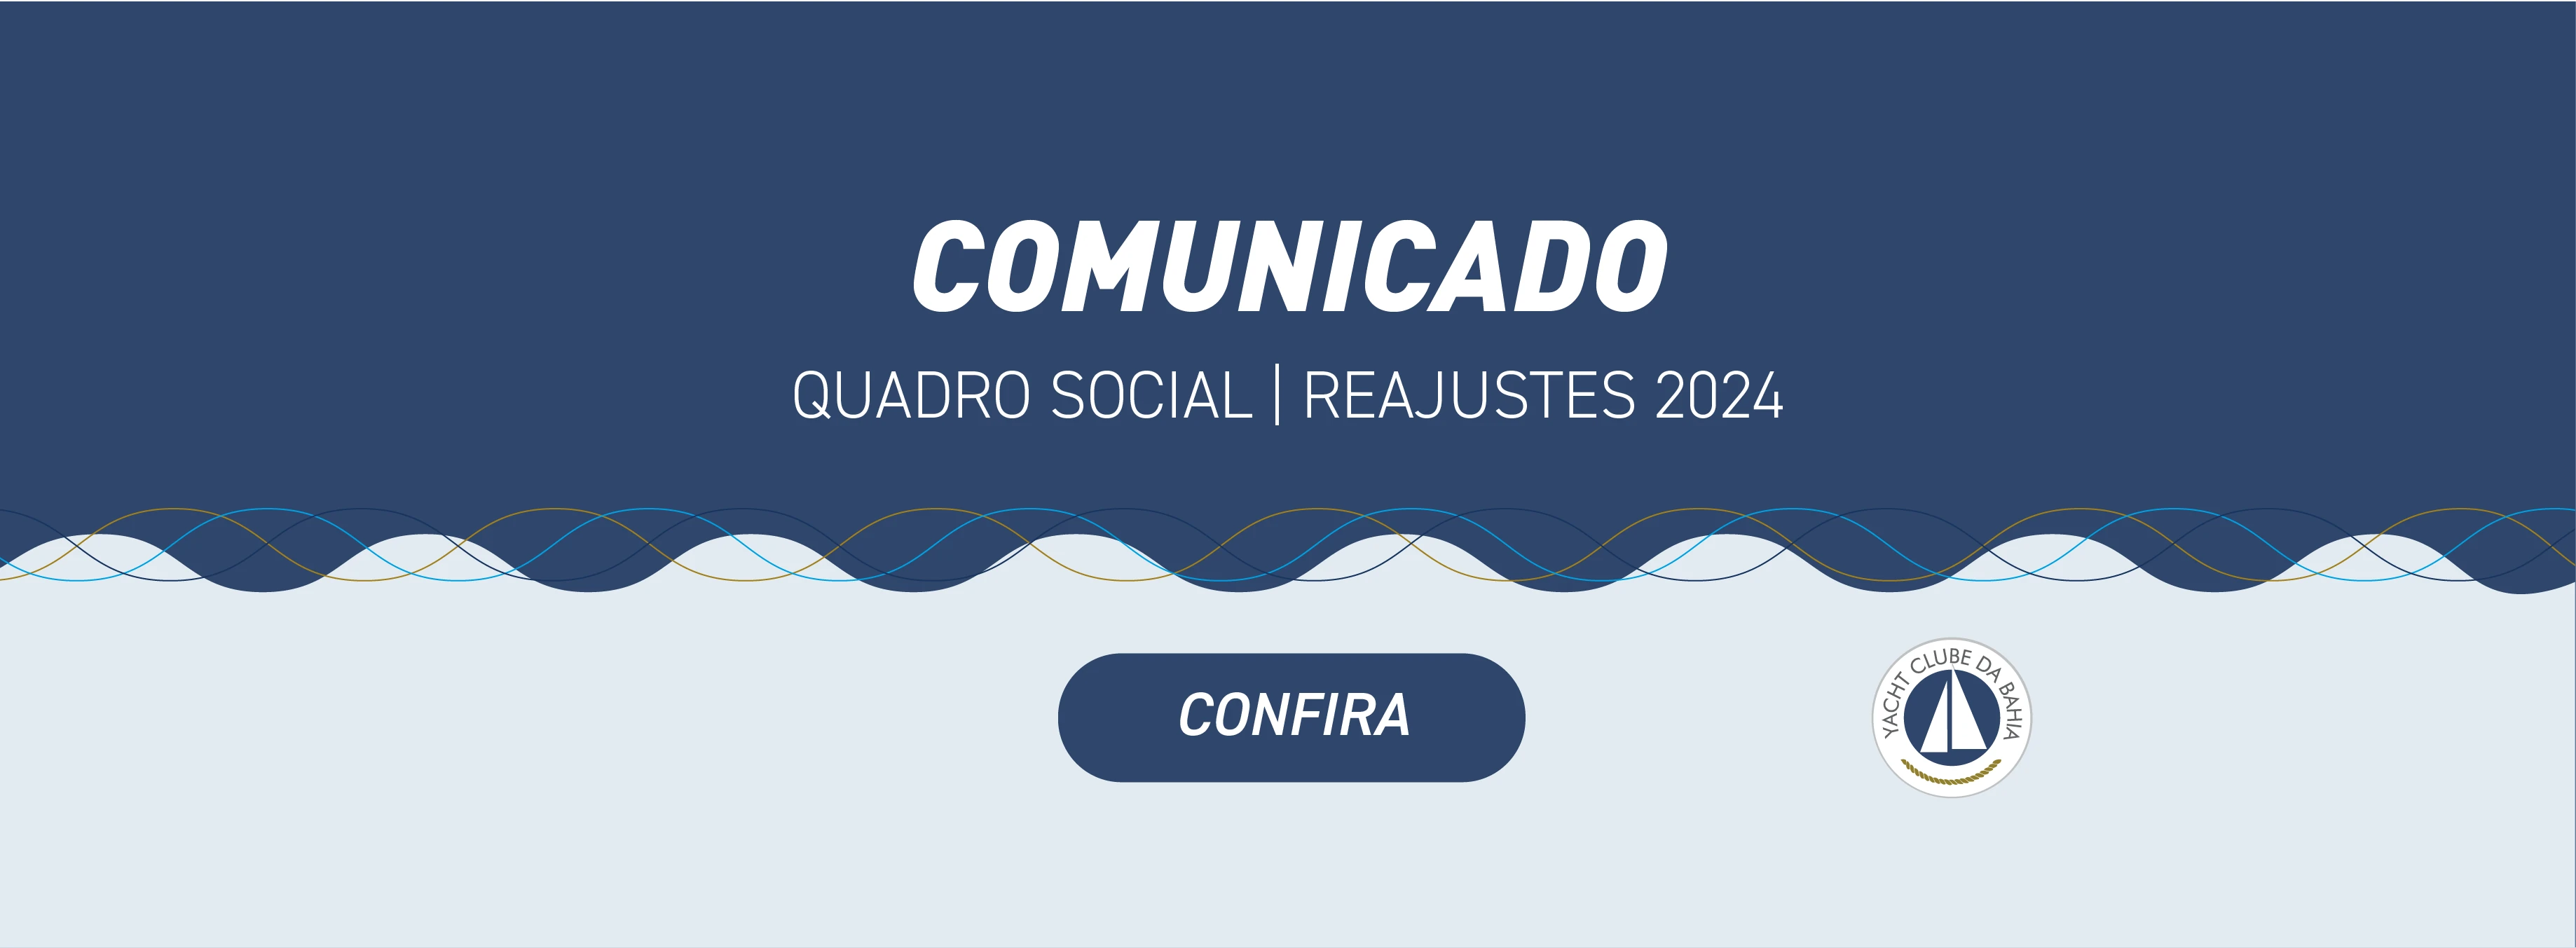 REAJUSTE QUADRO SOCIAL 2024